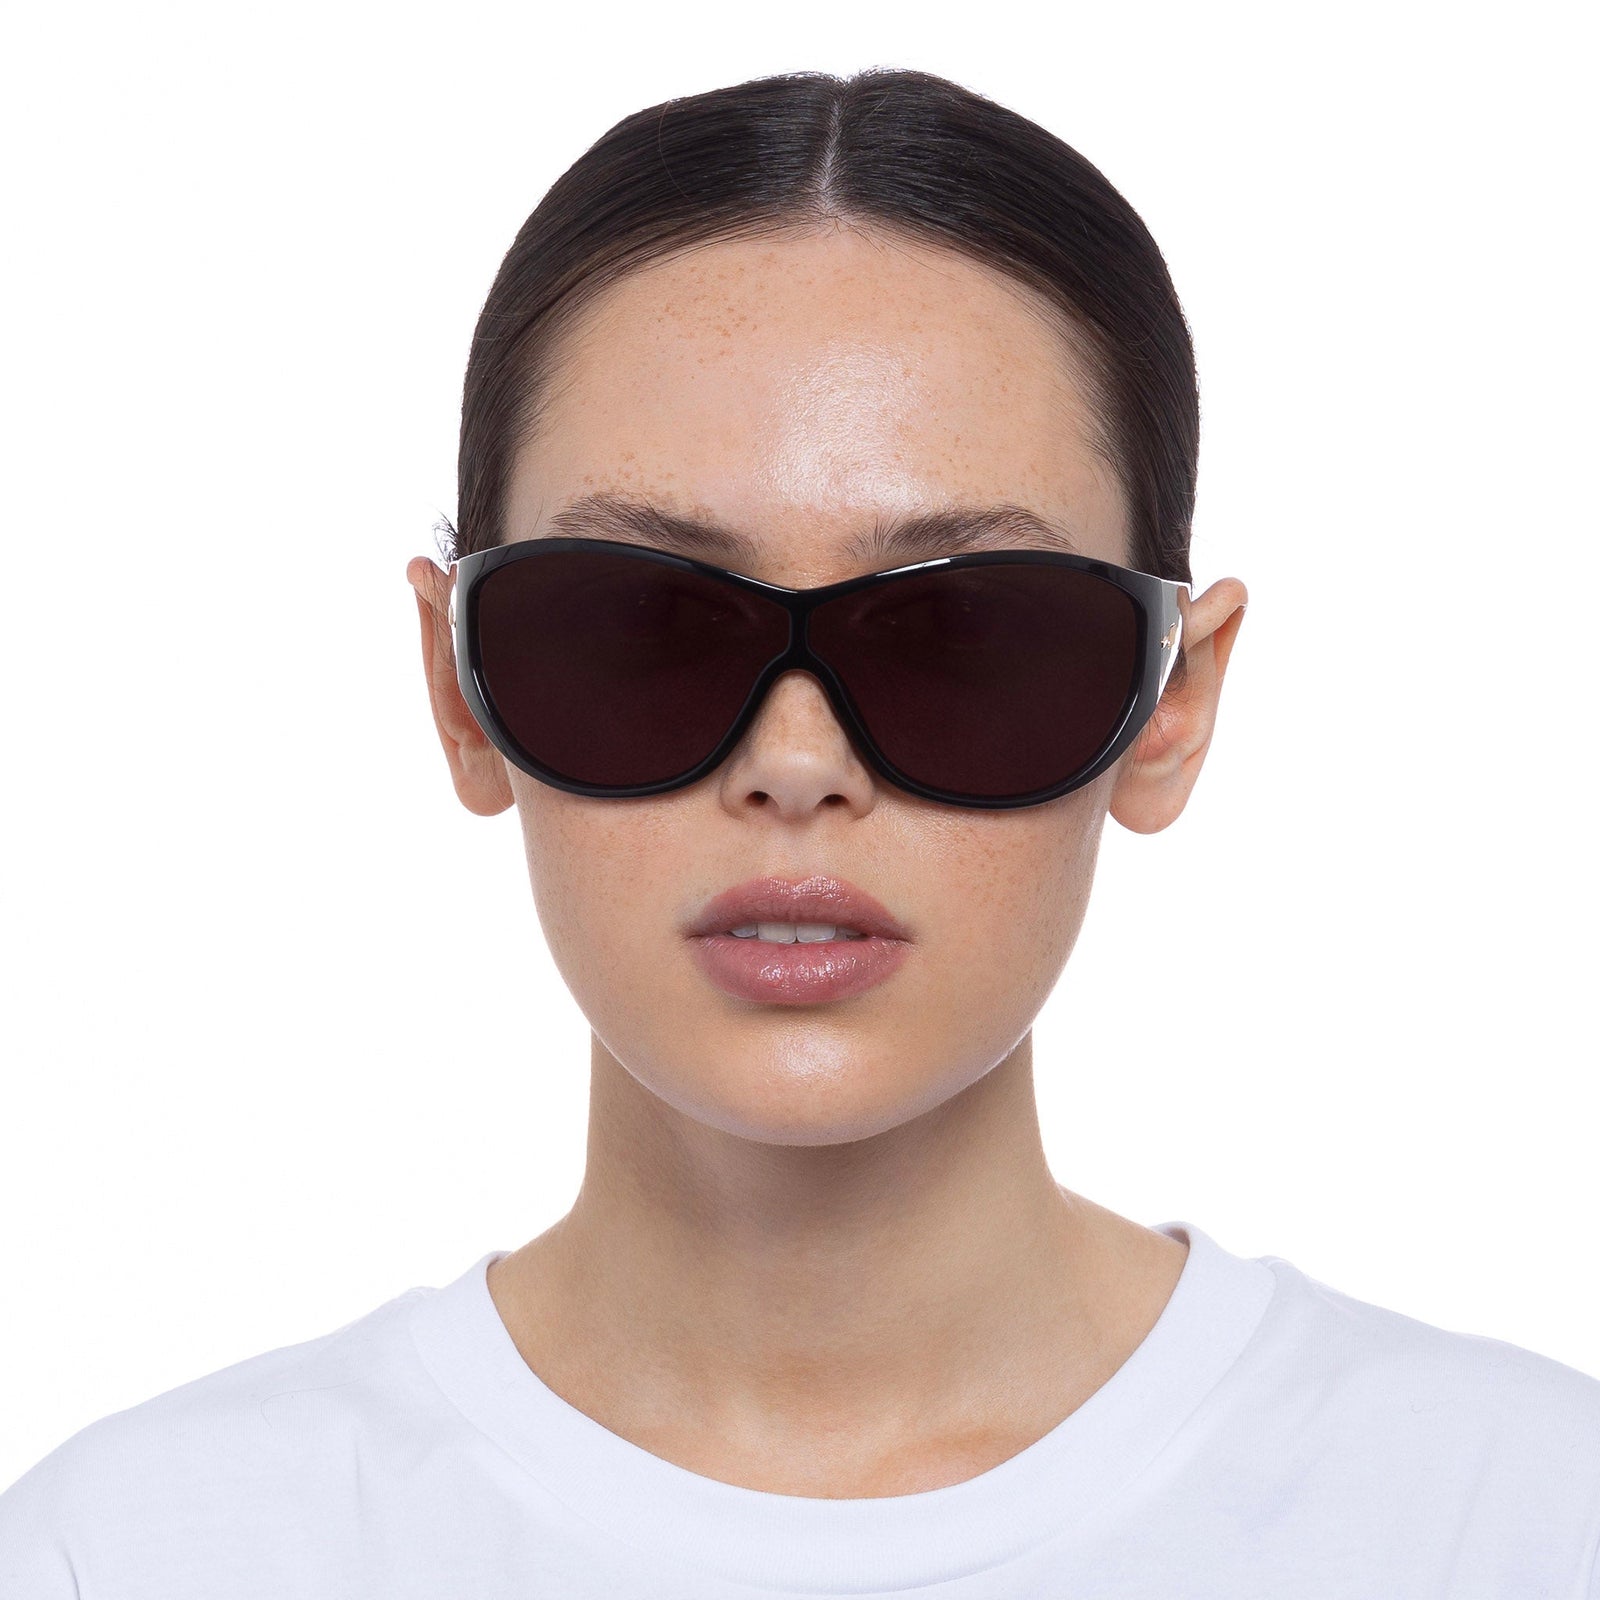 Specs Black Wrap Wraps Sunglasses | Uni-Sex Le Under